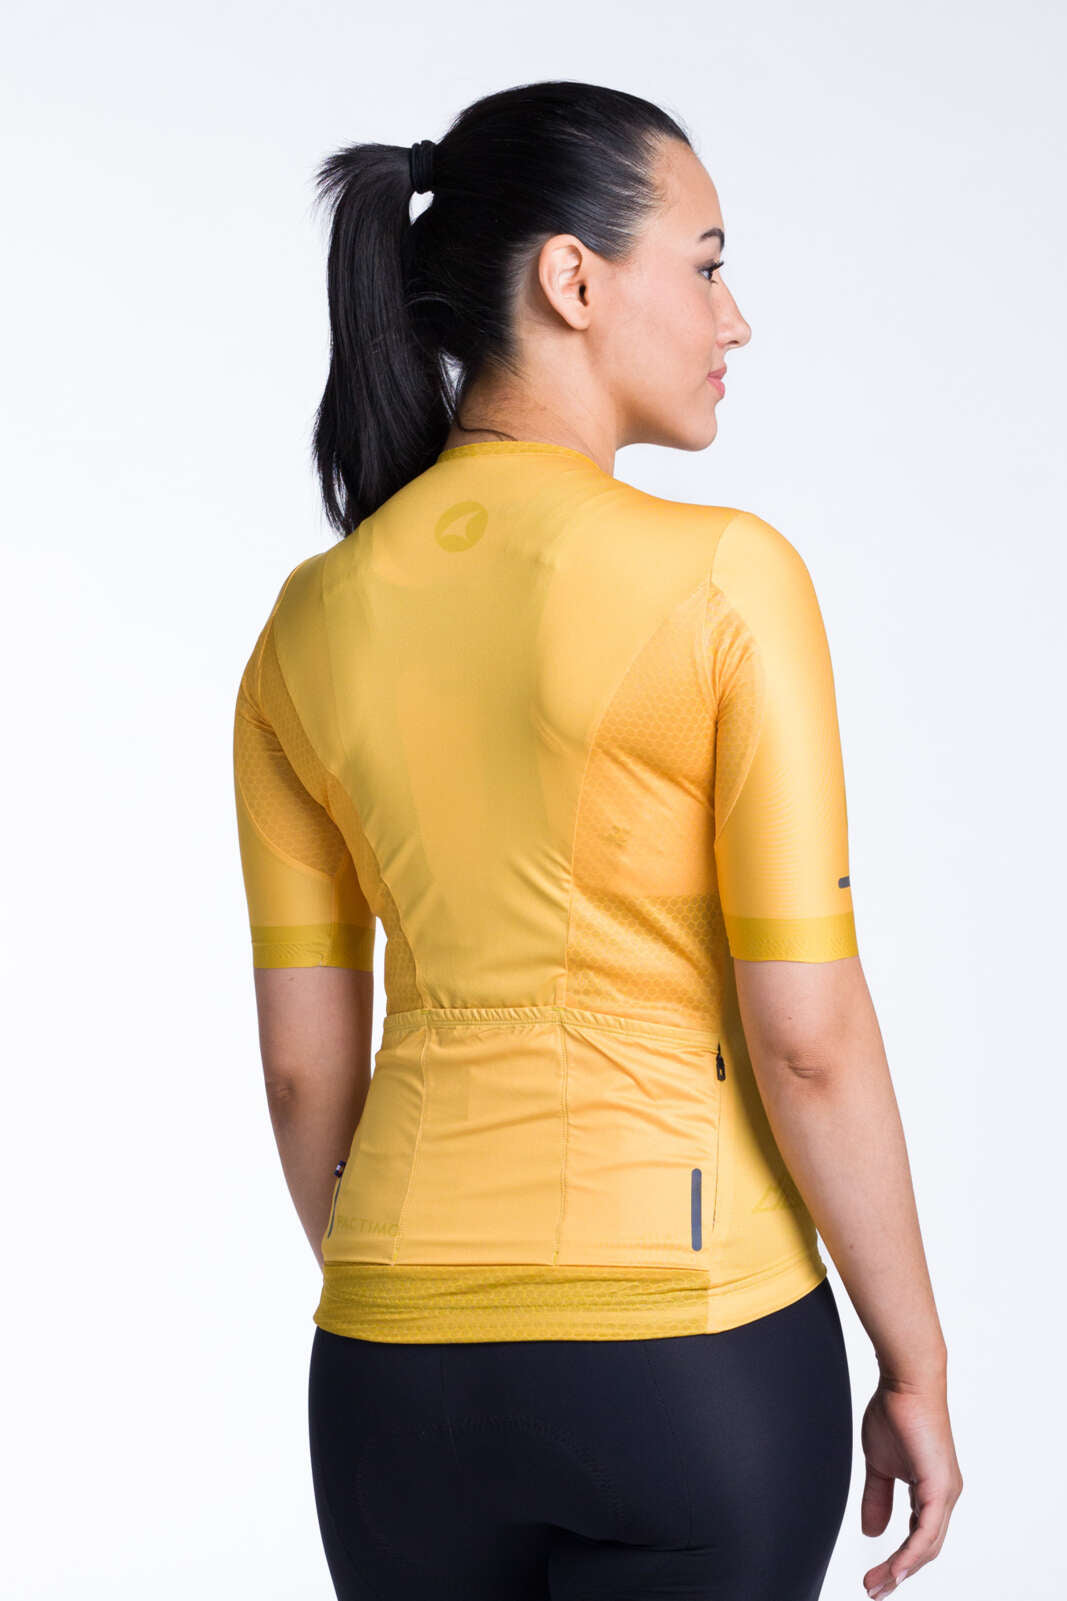 Women's Yellow/Orange Aero Cycling Jersey - Summit Back View